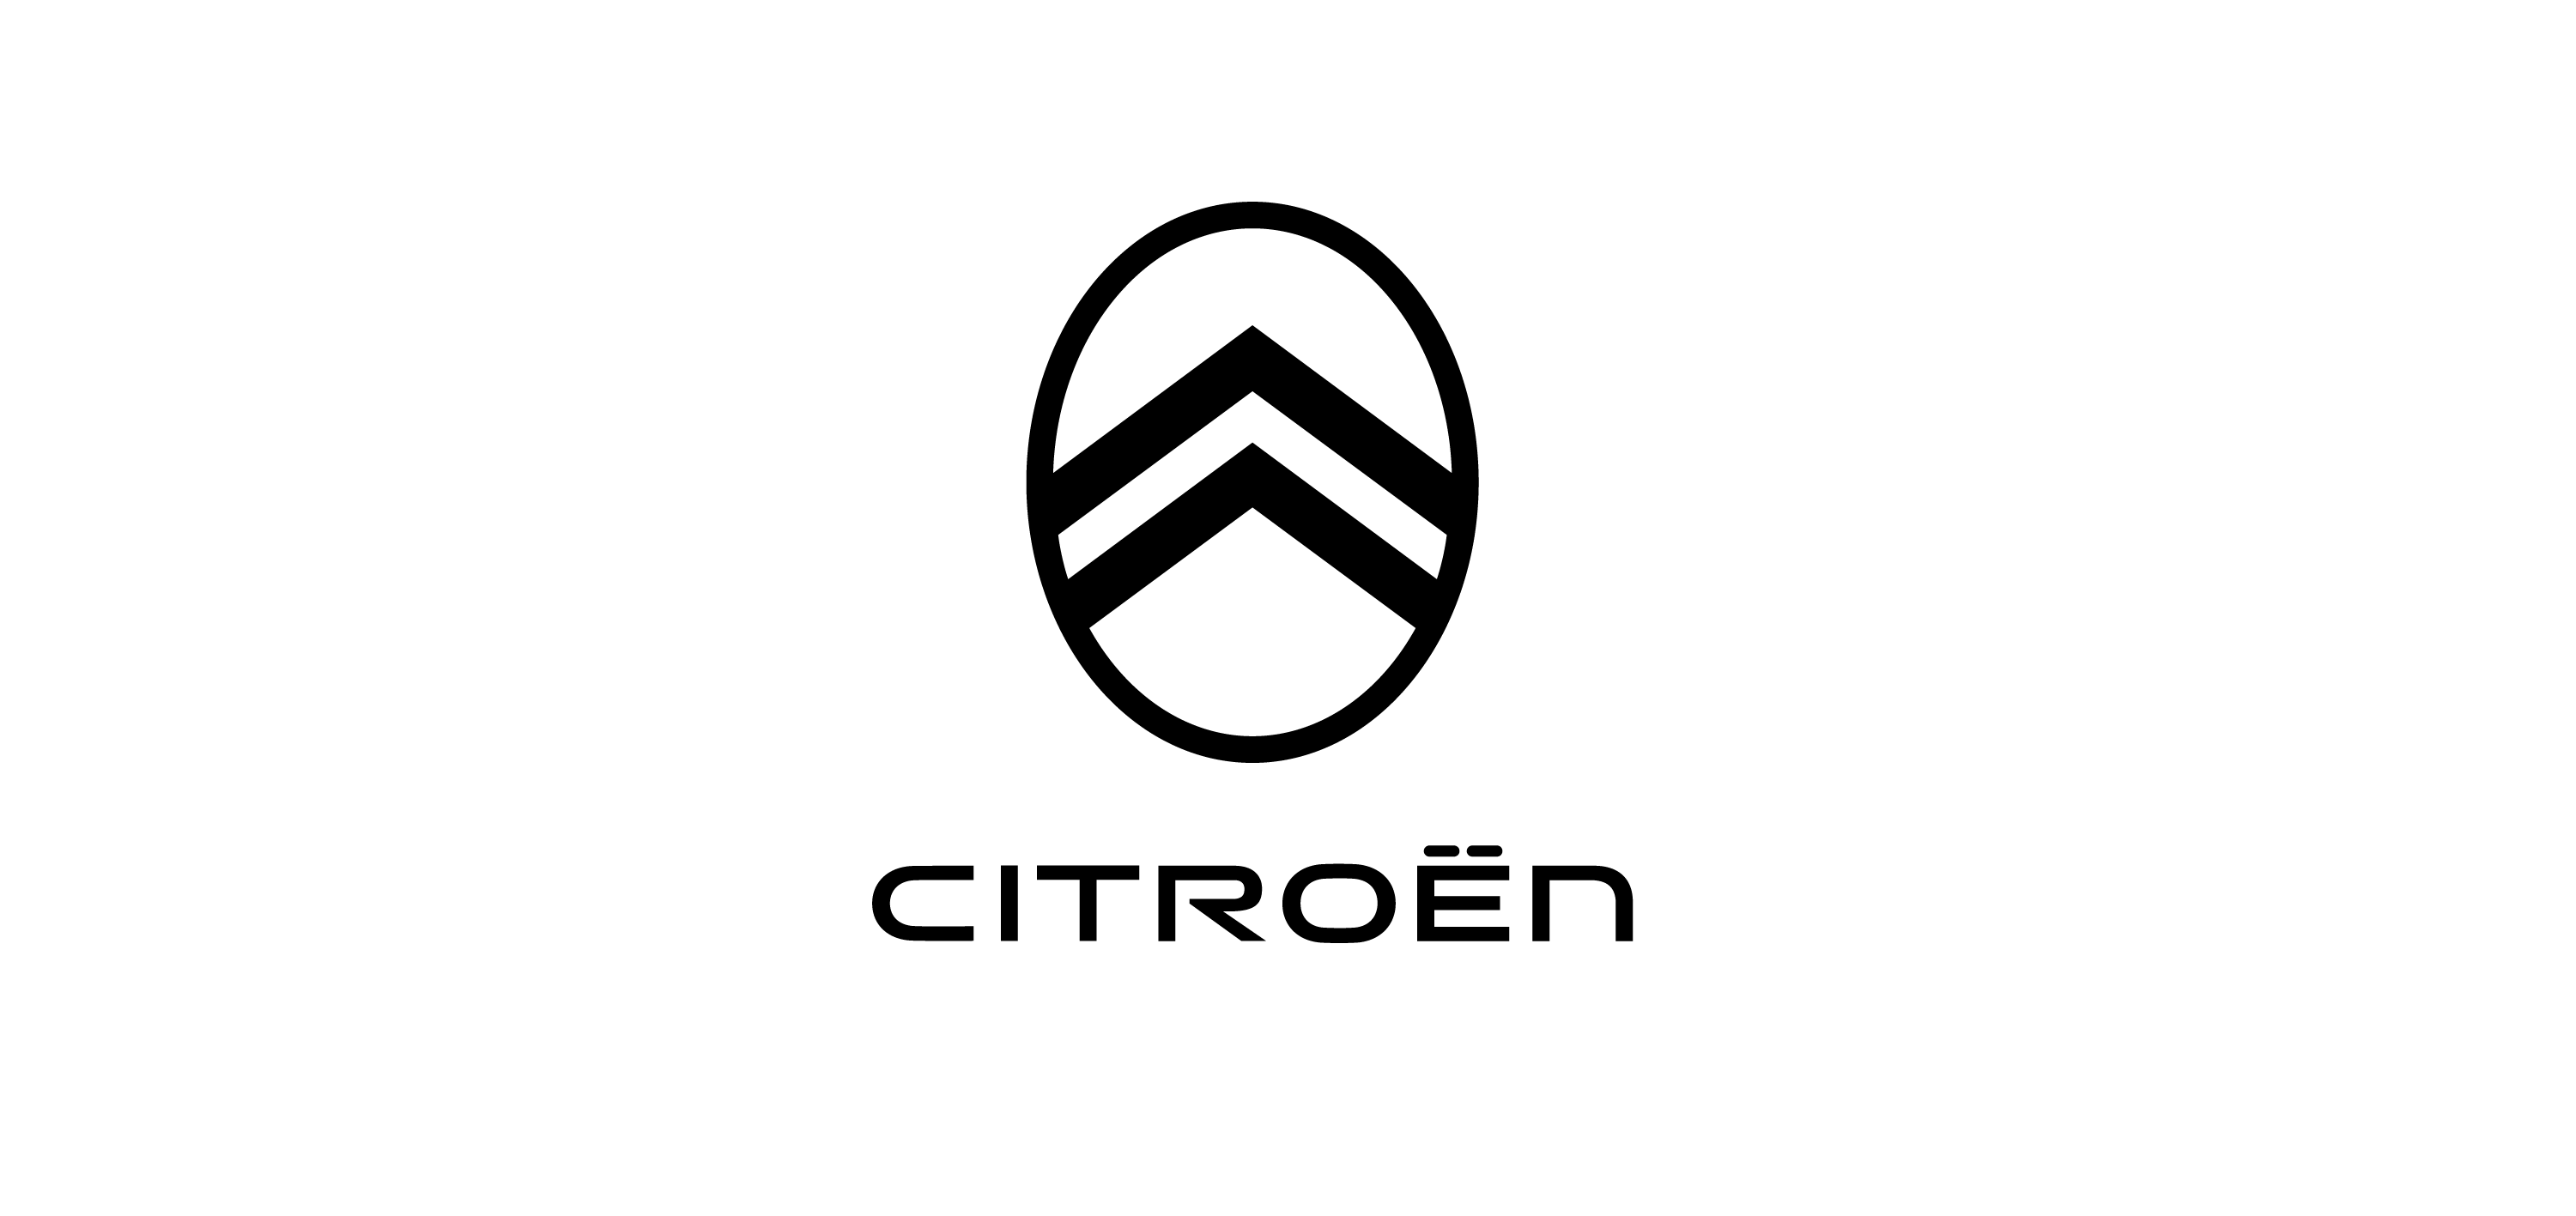 Citroën logo vector 22